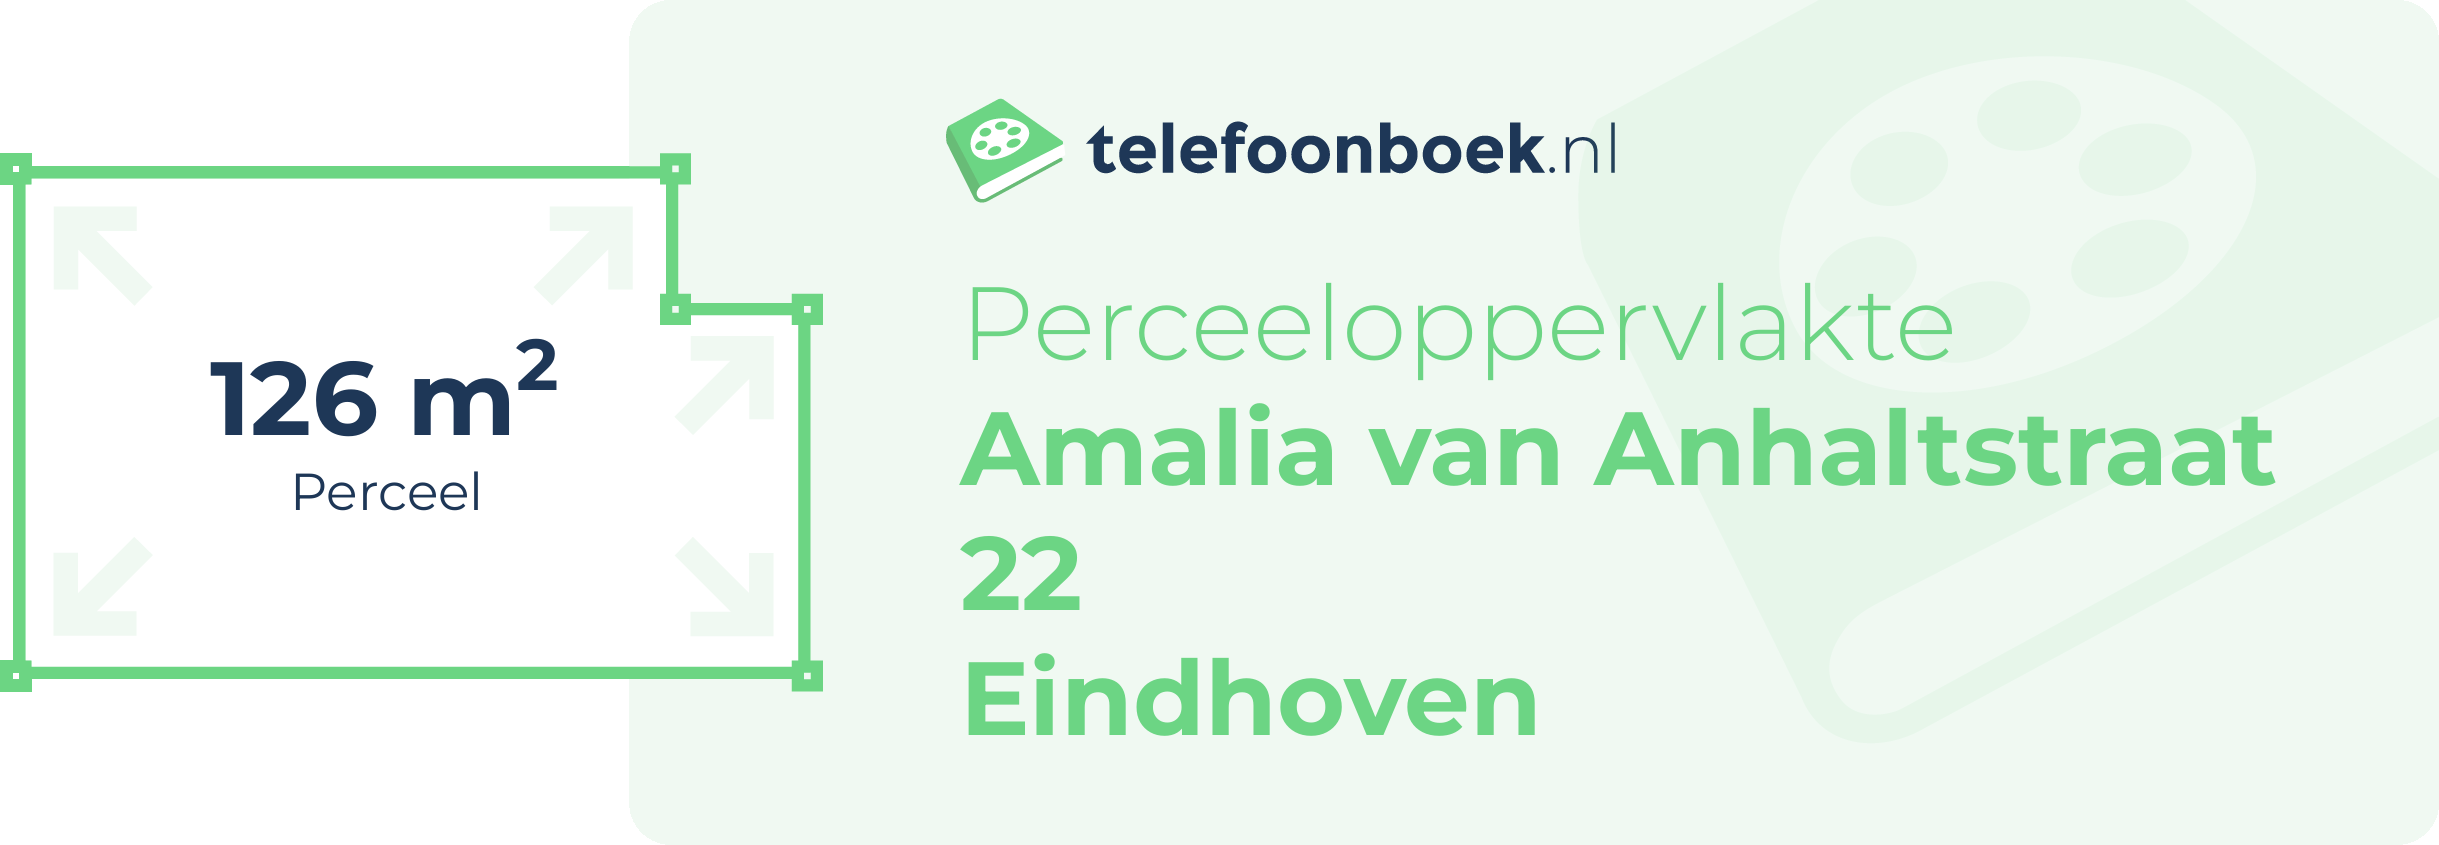 Perceeloppervlakte Amalia Van Anhaltstraat 22 Eindhoven